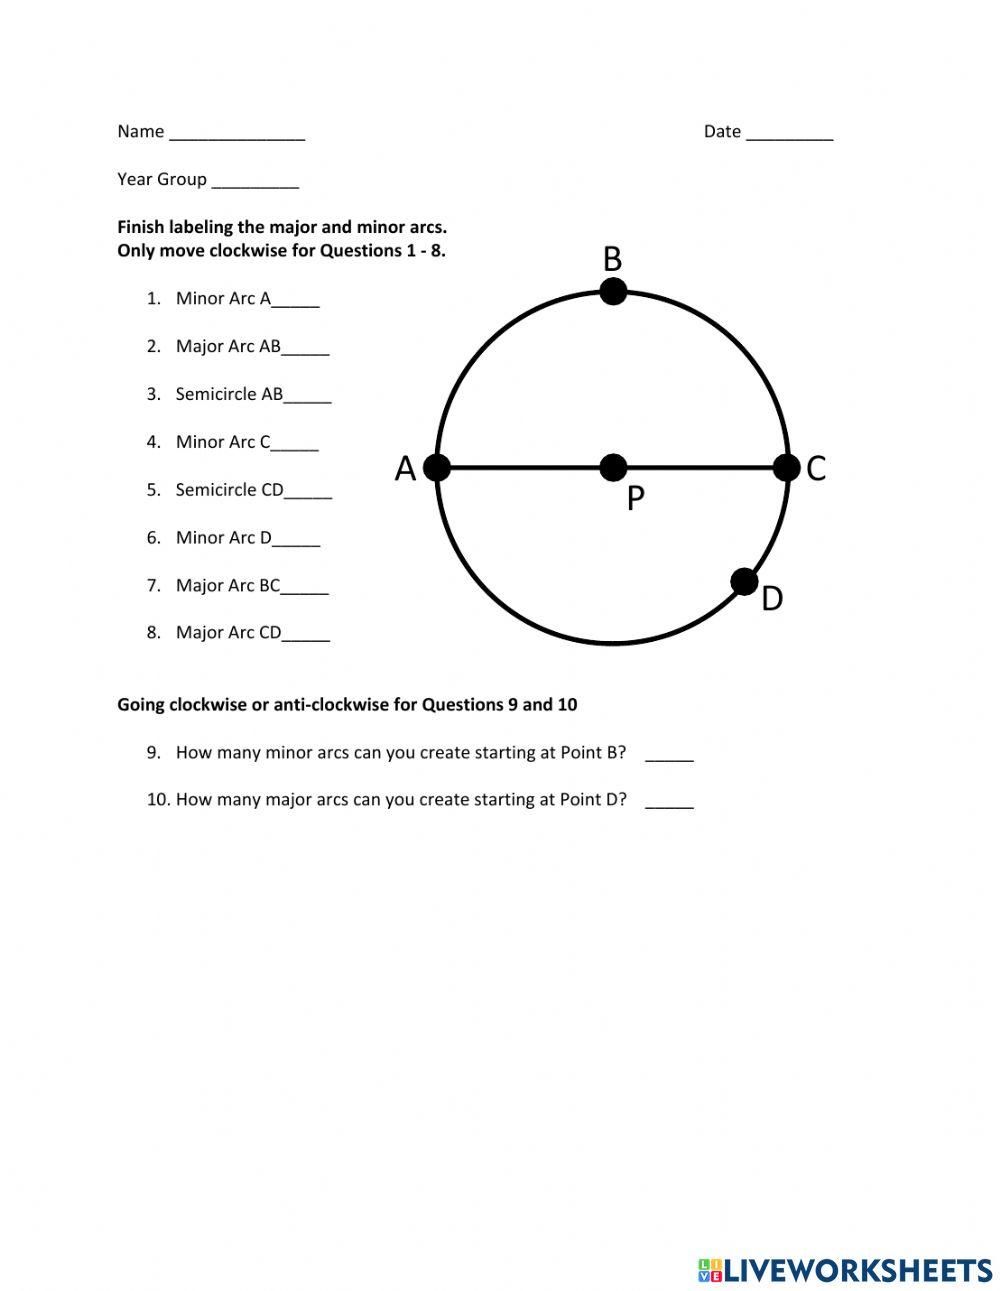 Circles - Major Arcs vs Minor Arcs